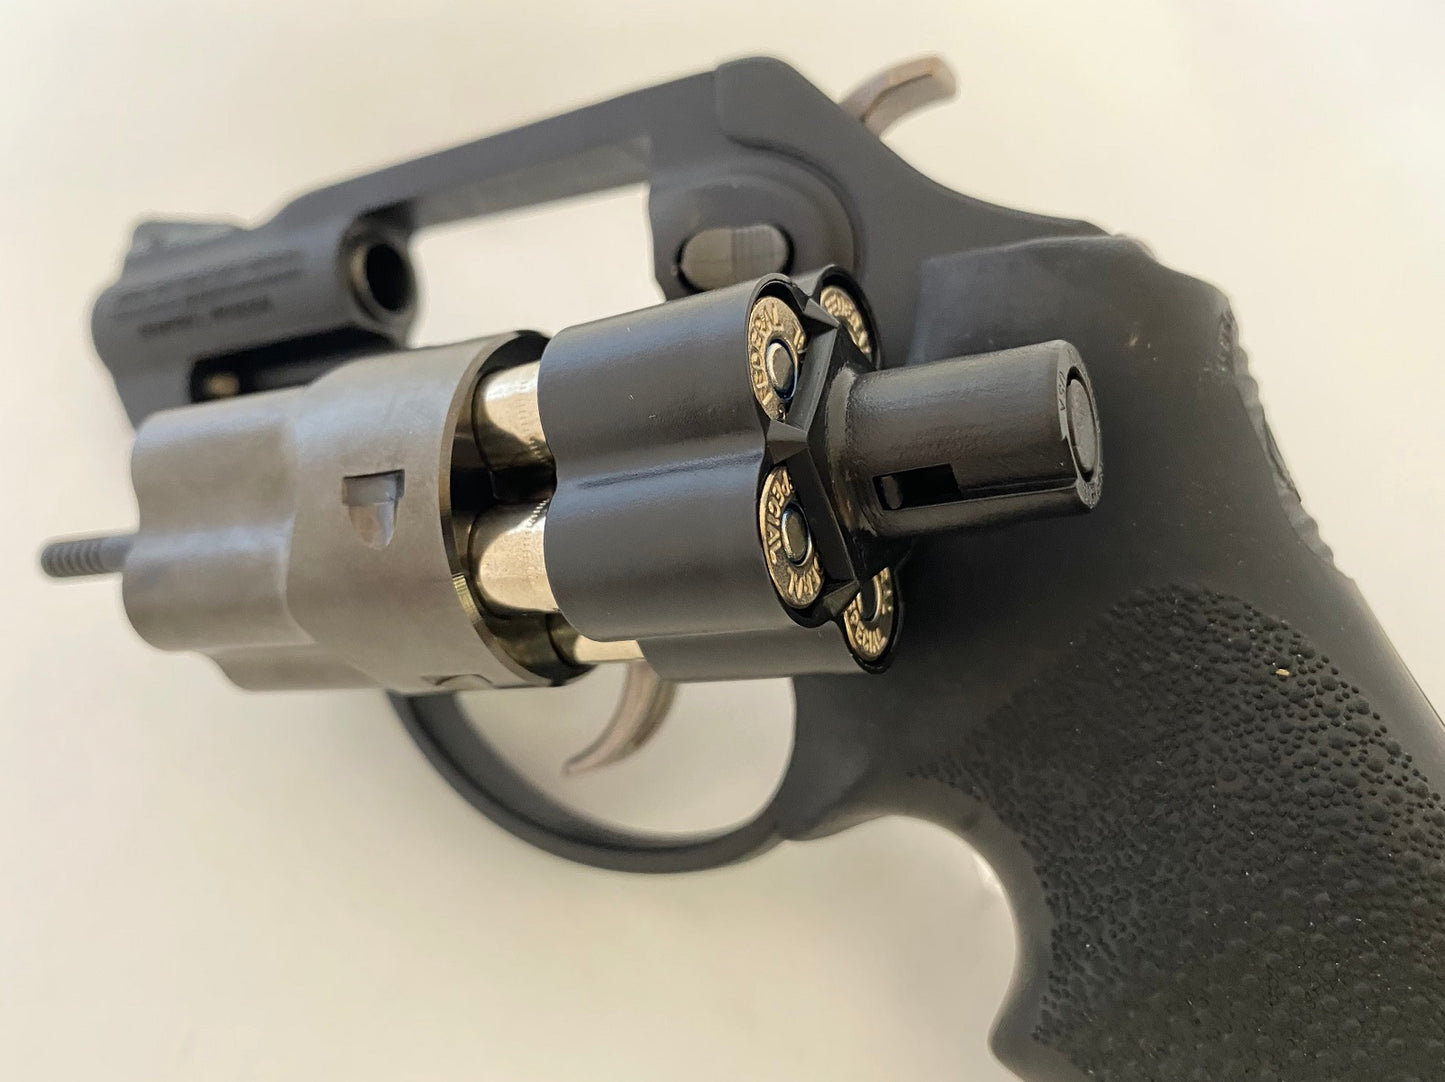 Caliber: .38 Spl / .357 Mag., Loader for 5-Shot, S&W J-frames and Ruger LCR revolvers